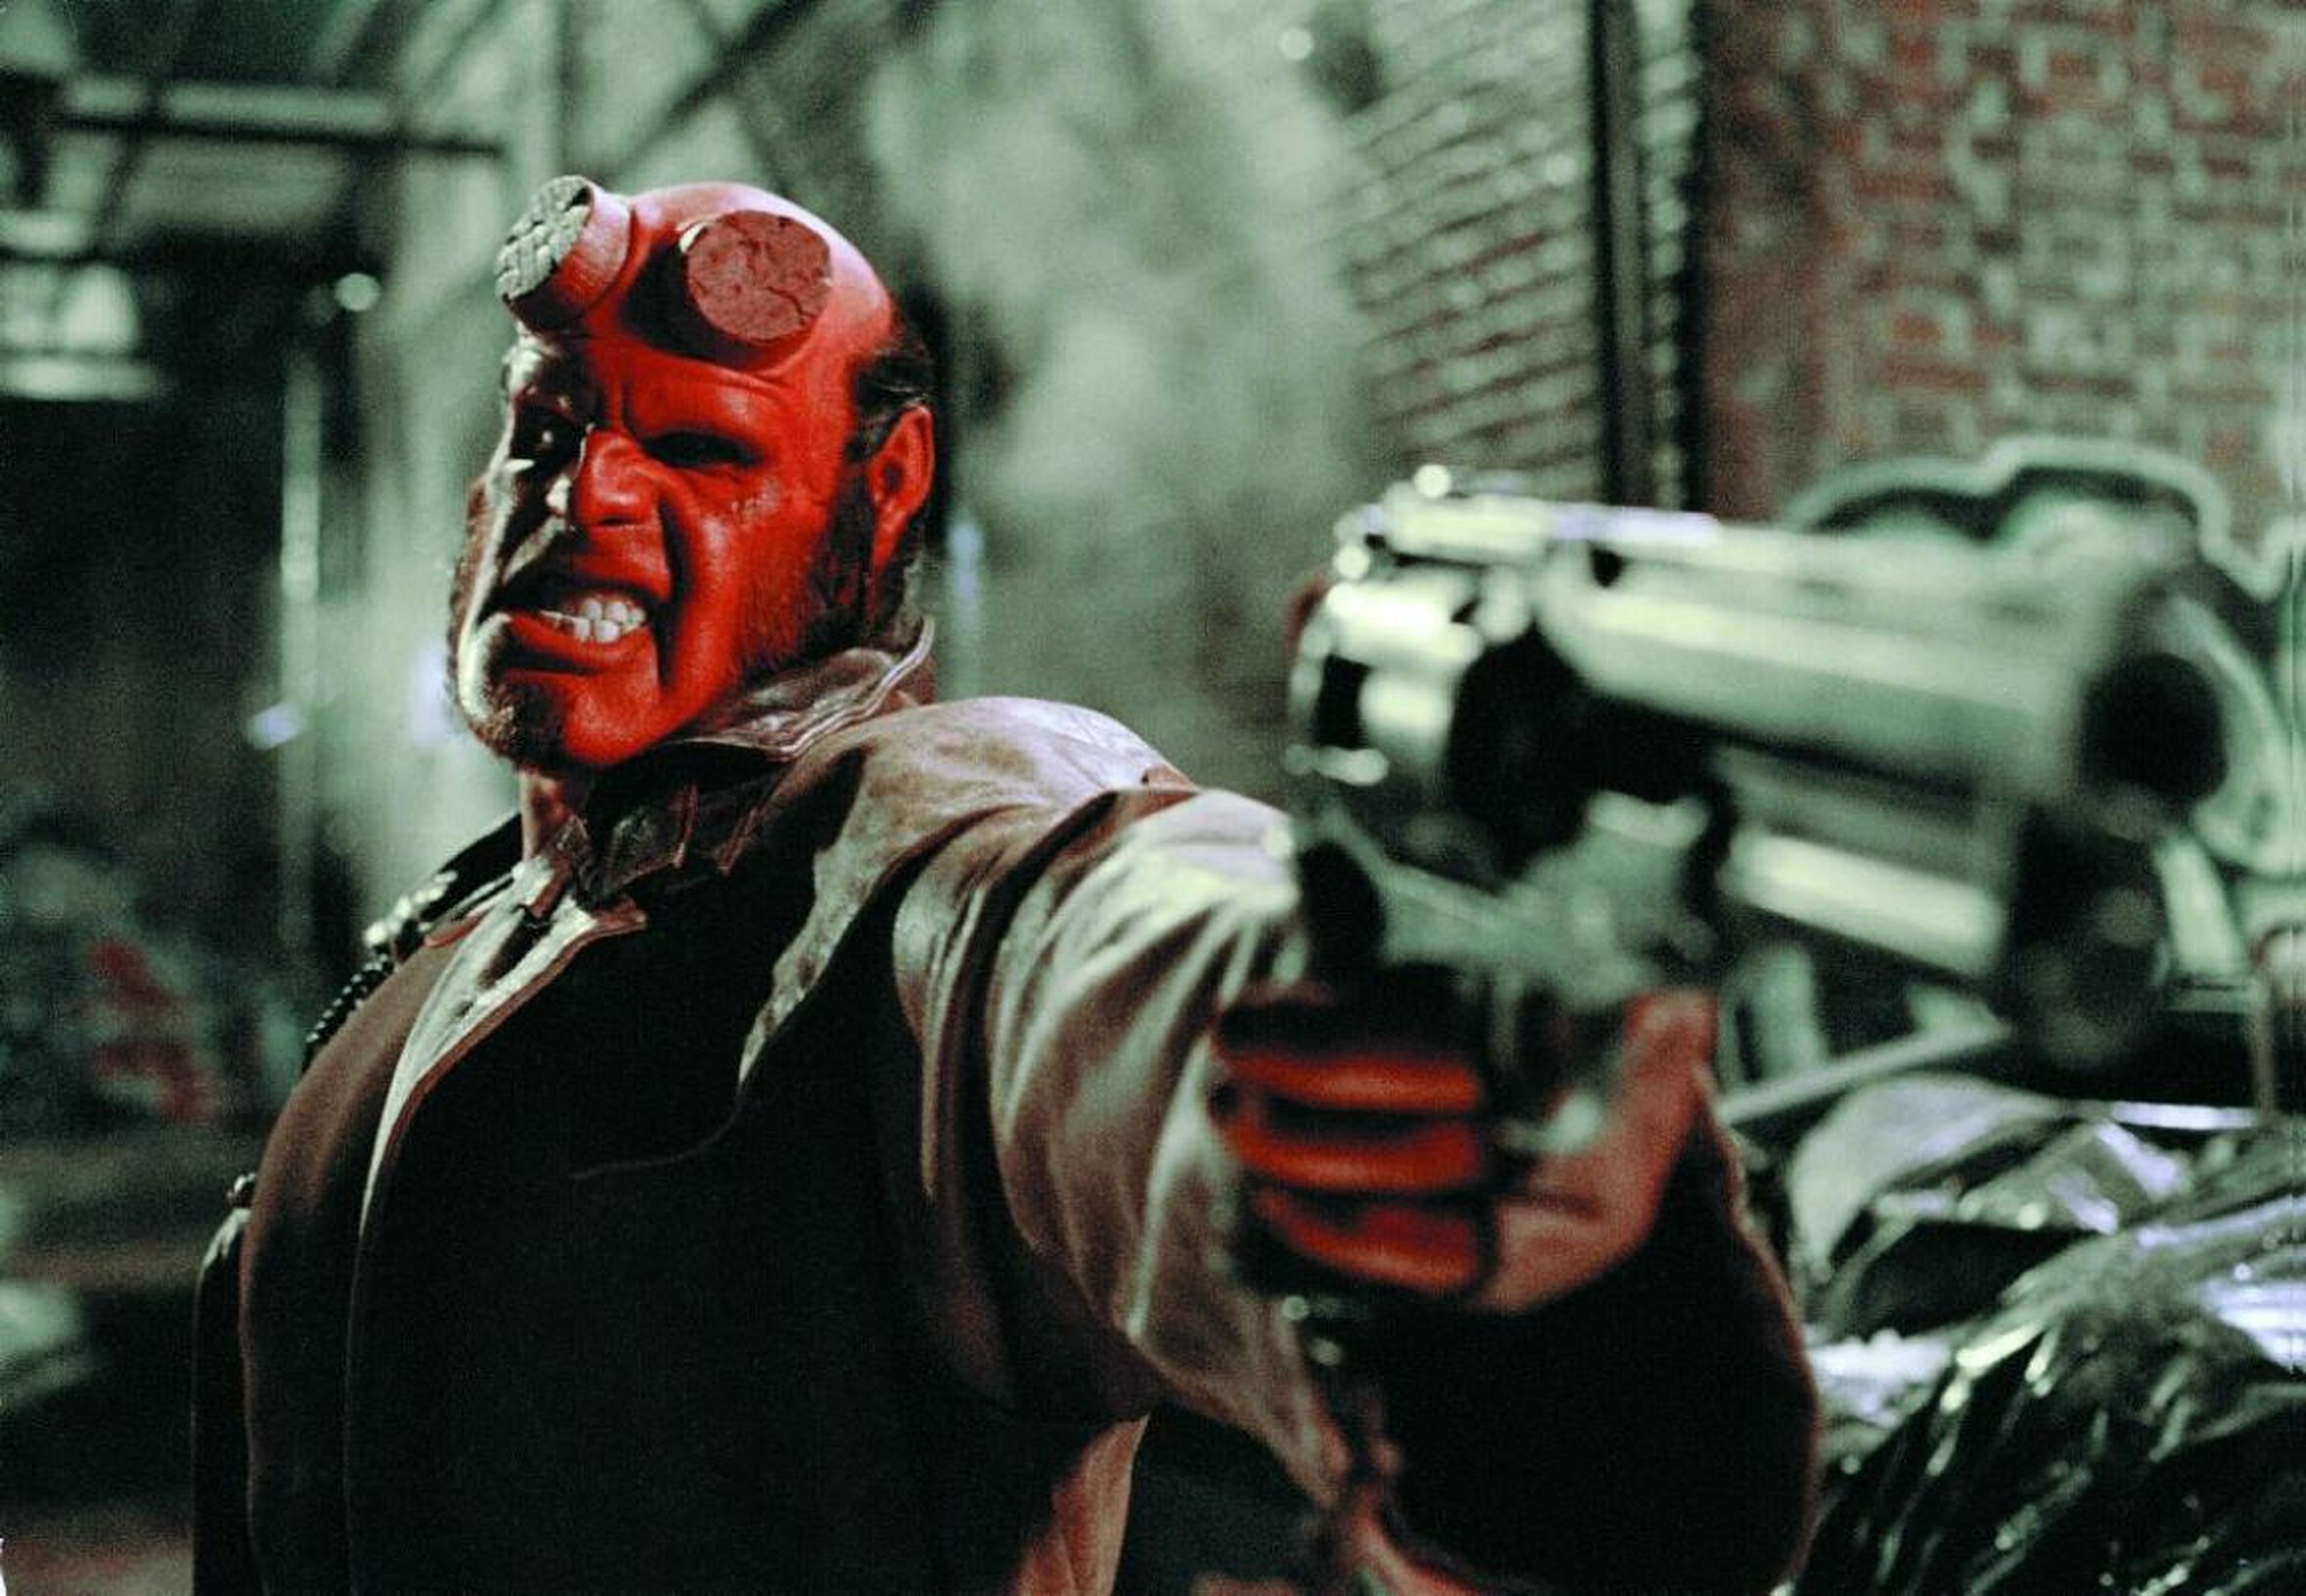 17. Ron Perlman as Hellboy in "Hellboy" (2004)